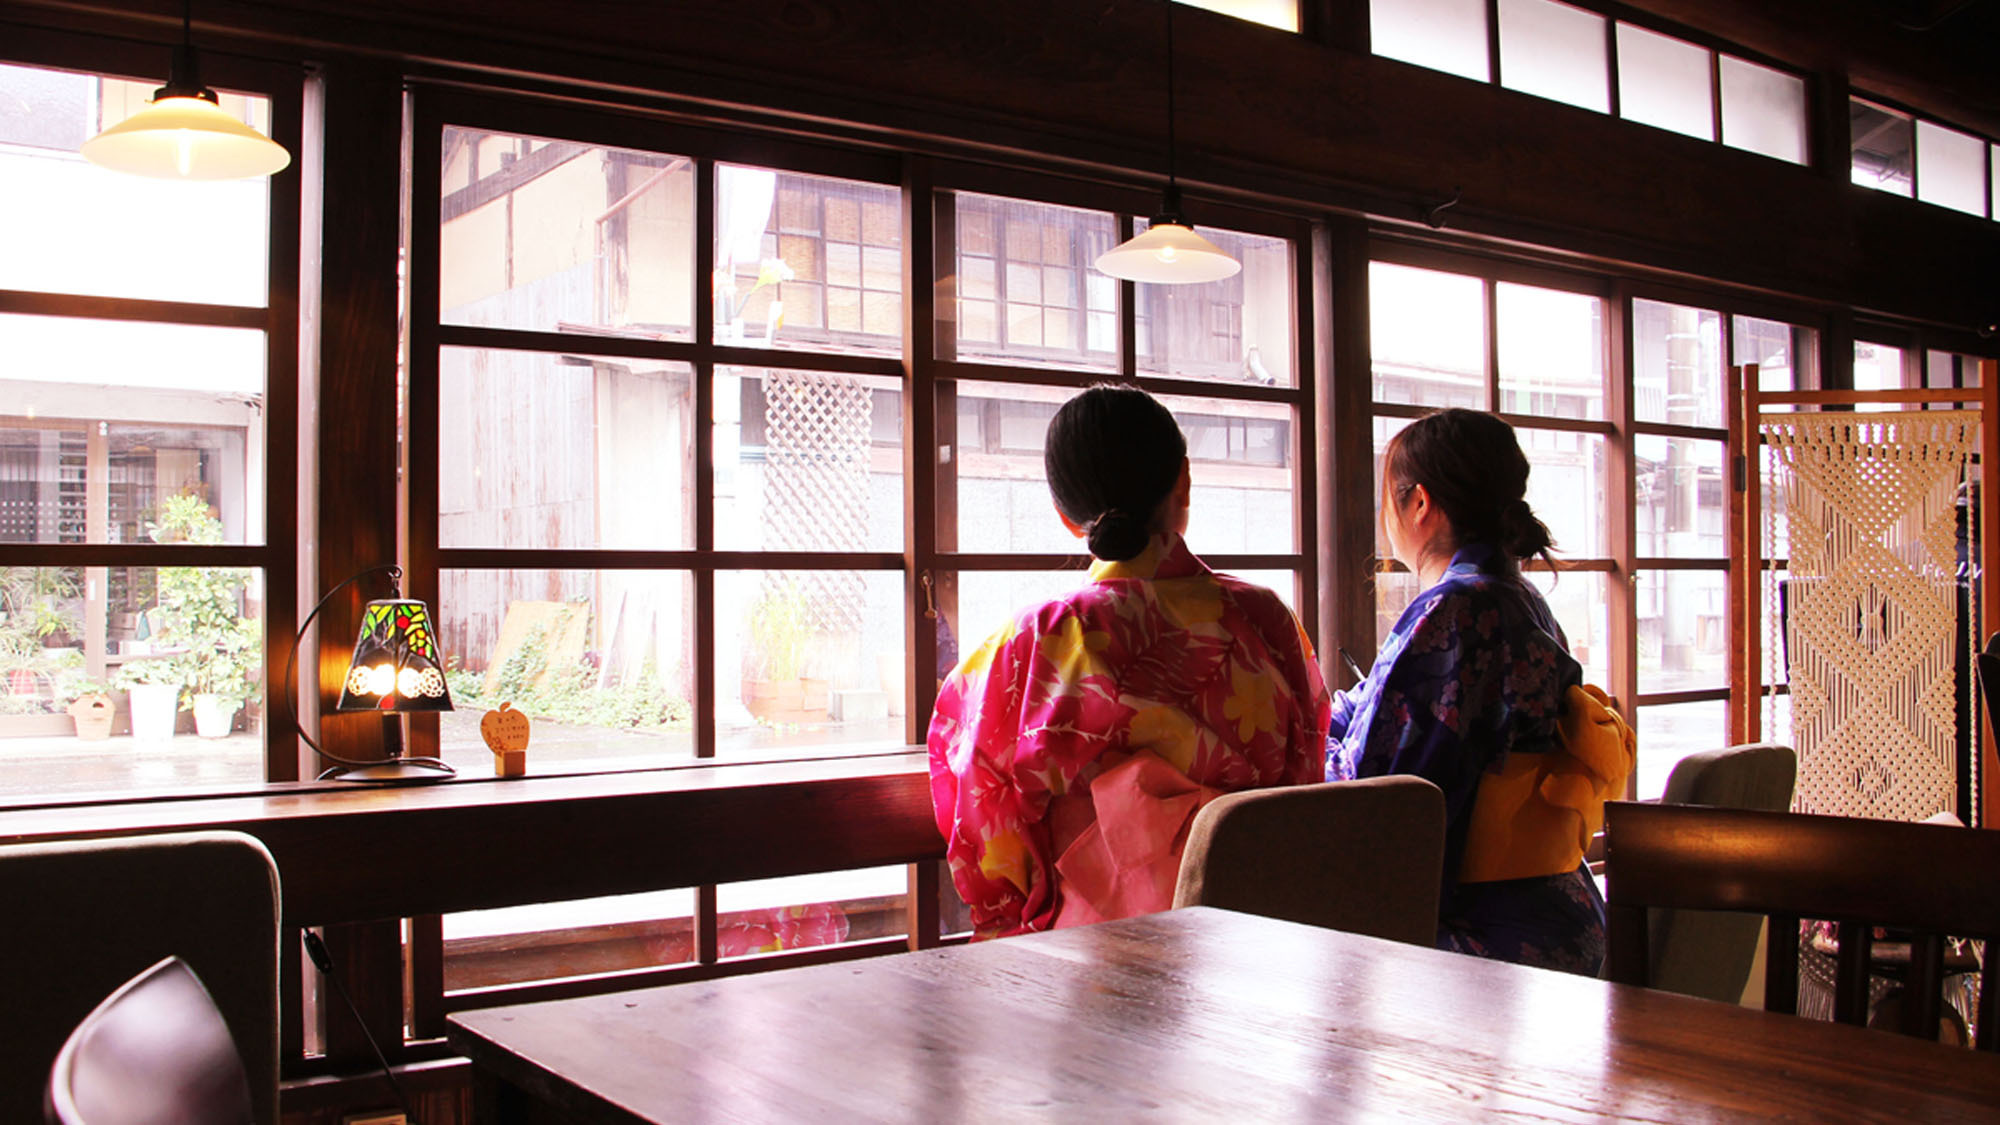 #daigo cafeでは大子町の街並みを眺めながらゆったりとした時間を過ごせます。